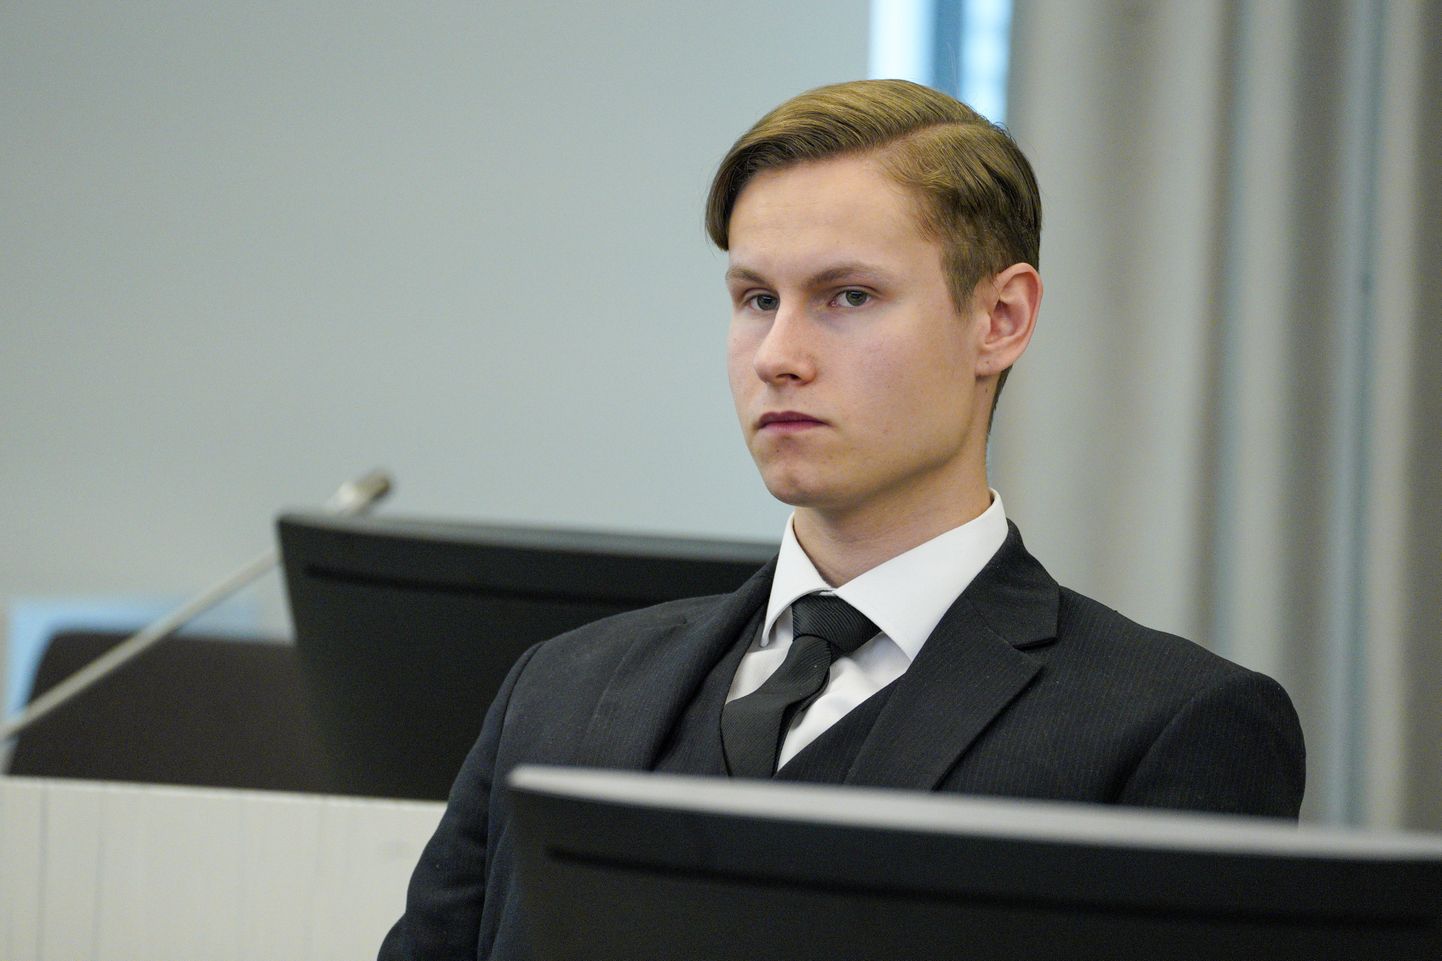 Norra mošeetulistaja Philip Manshaus viimasel kohtuistungil, kus ta 21-aastaks vangi mõisteti.